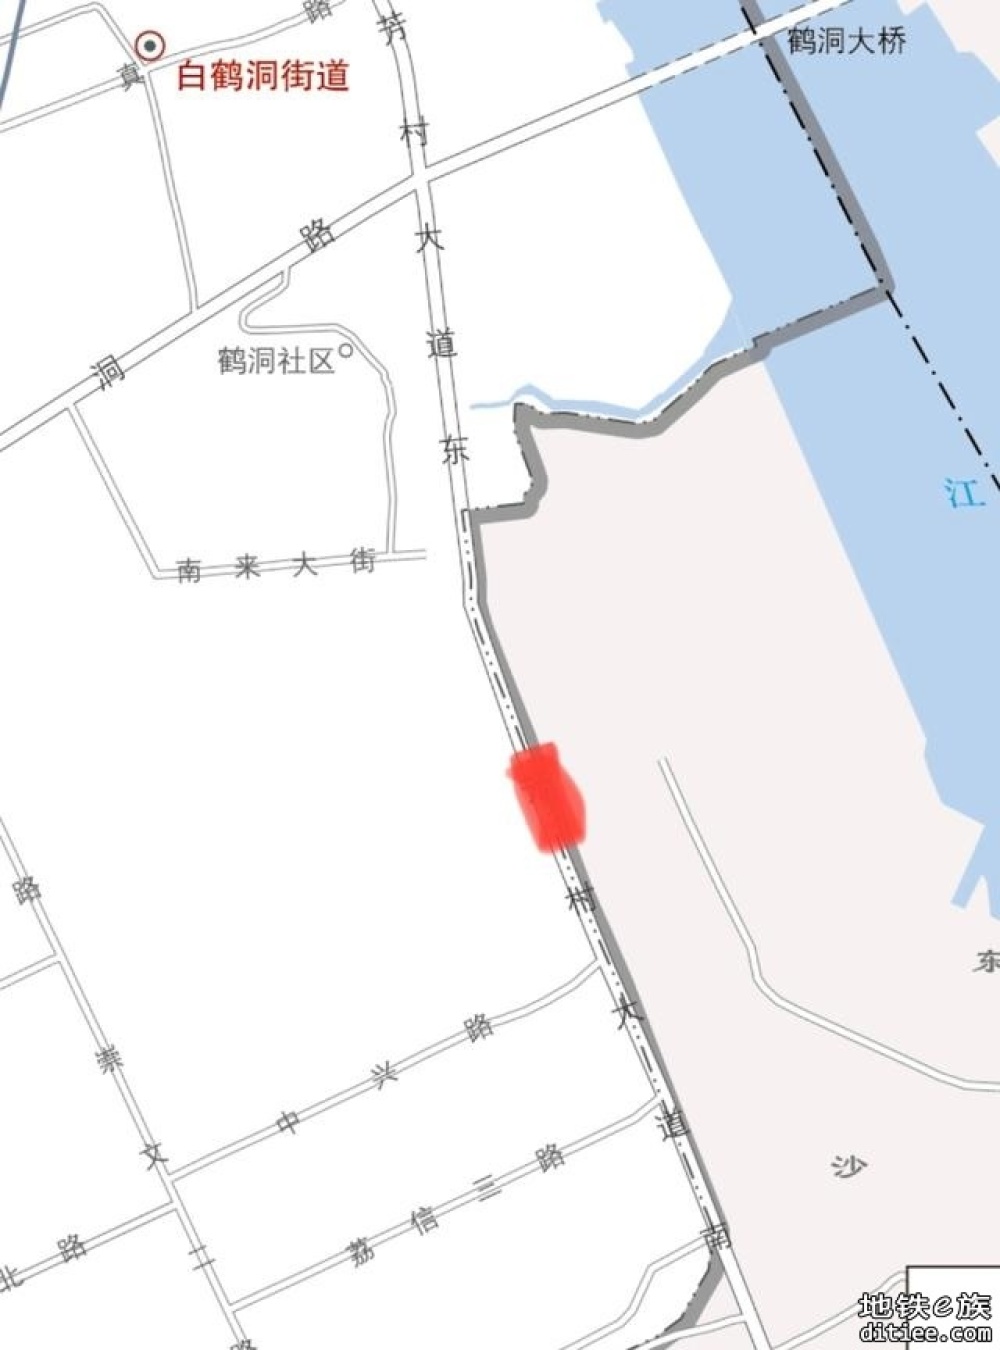 【持续更新】广州地铁新线预测正式名 v2.1.2